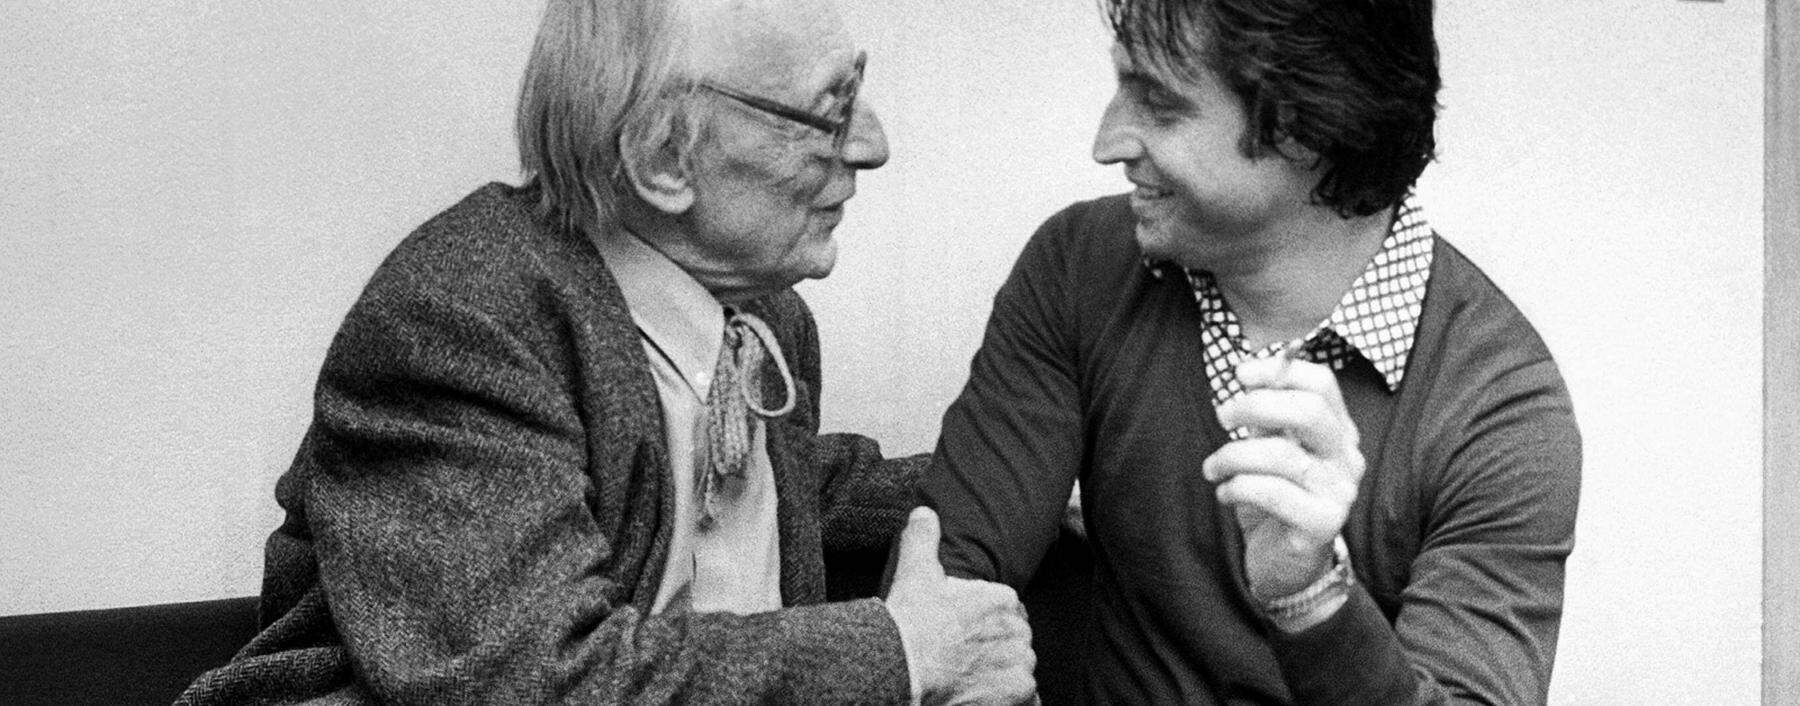 Riccardo Muti (r.) mit dem Komponisten Carl Orff, 1977.